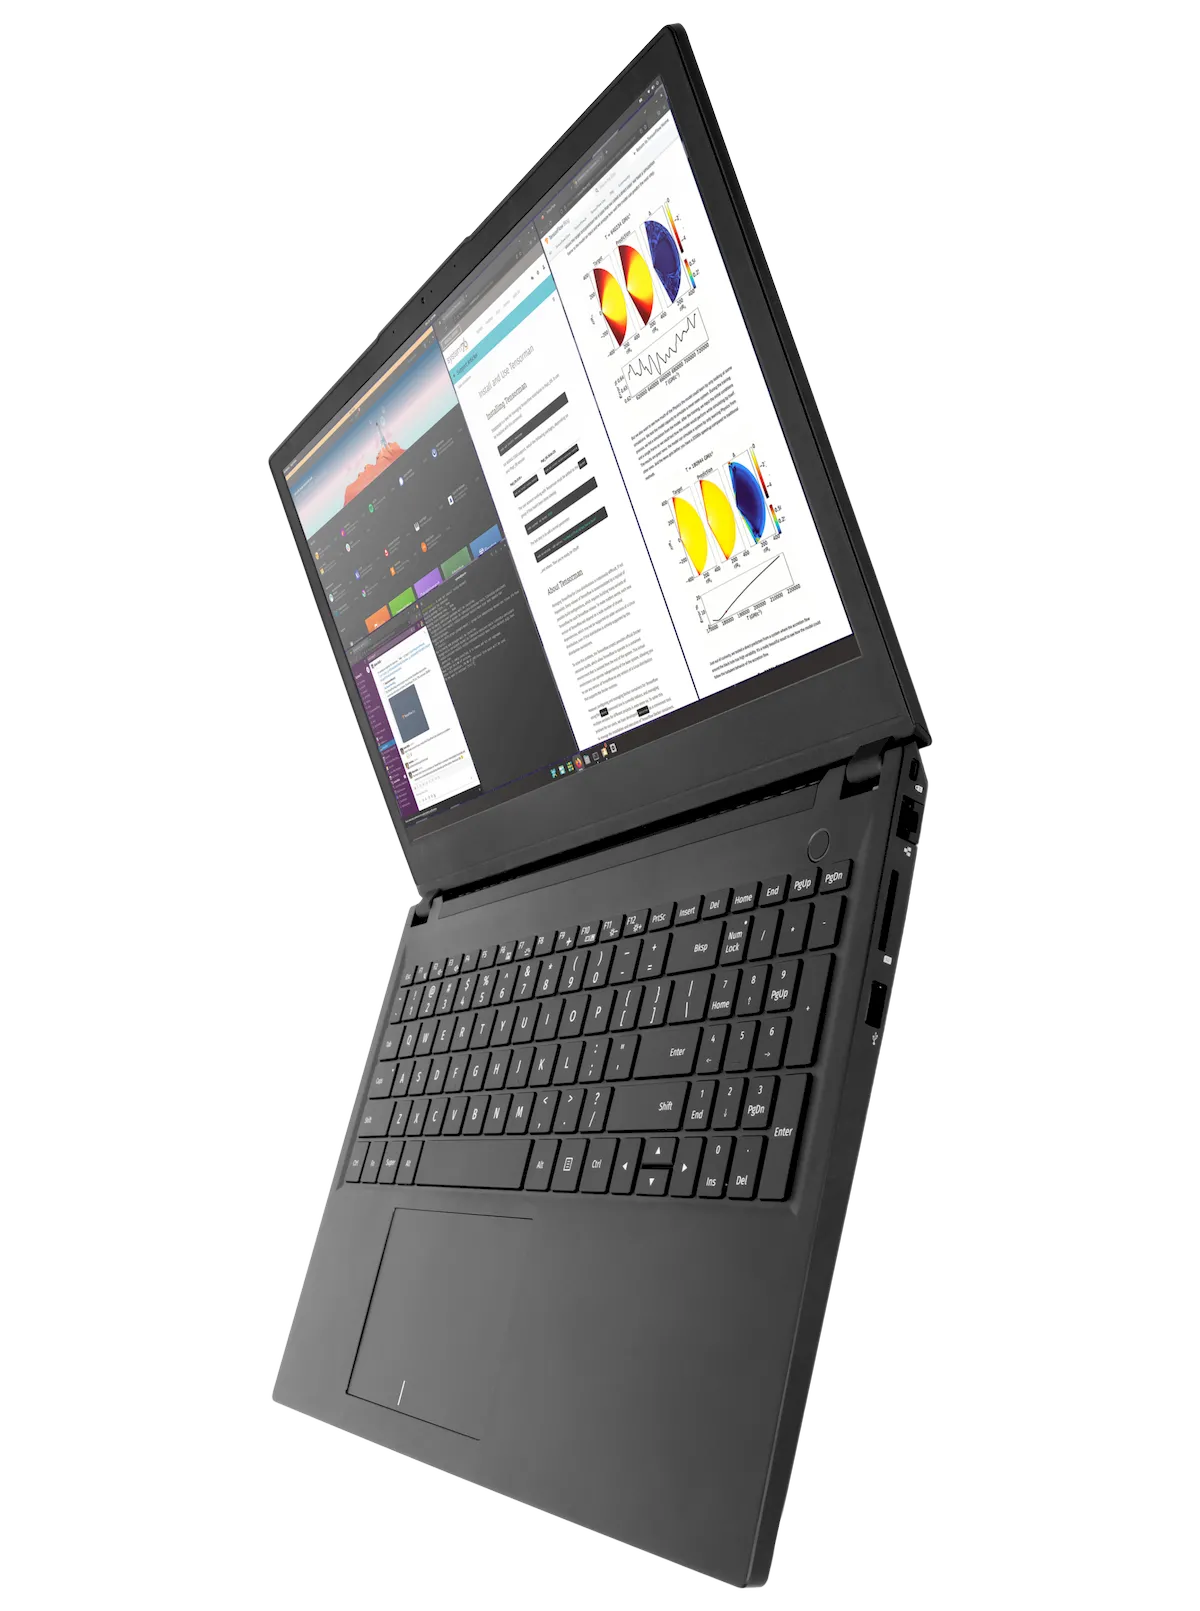 Novo laptop Pangolin da System76 já está disponível para pedidos